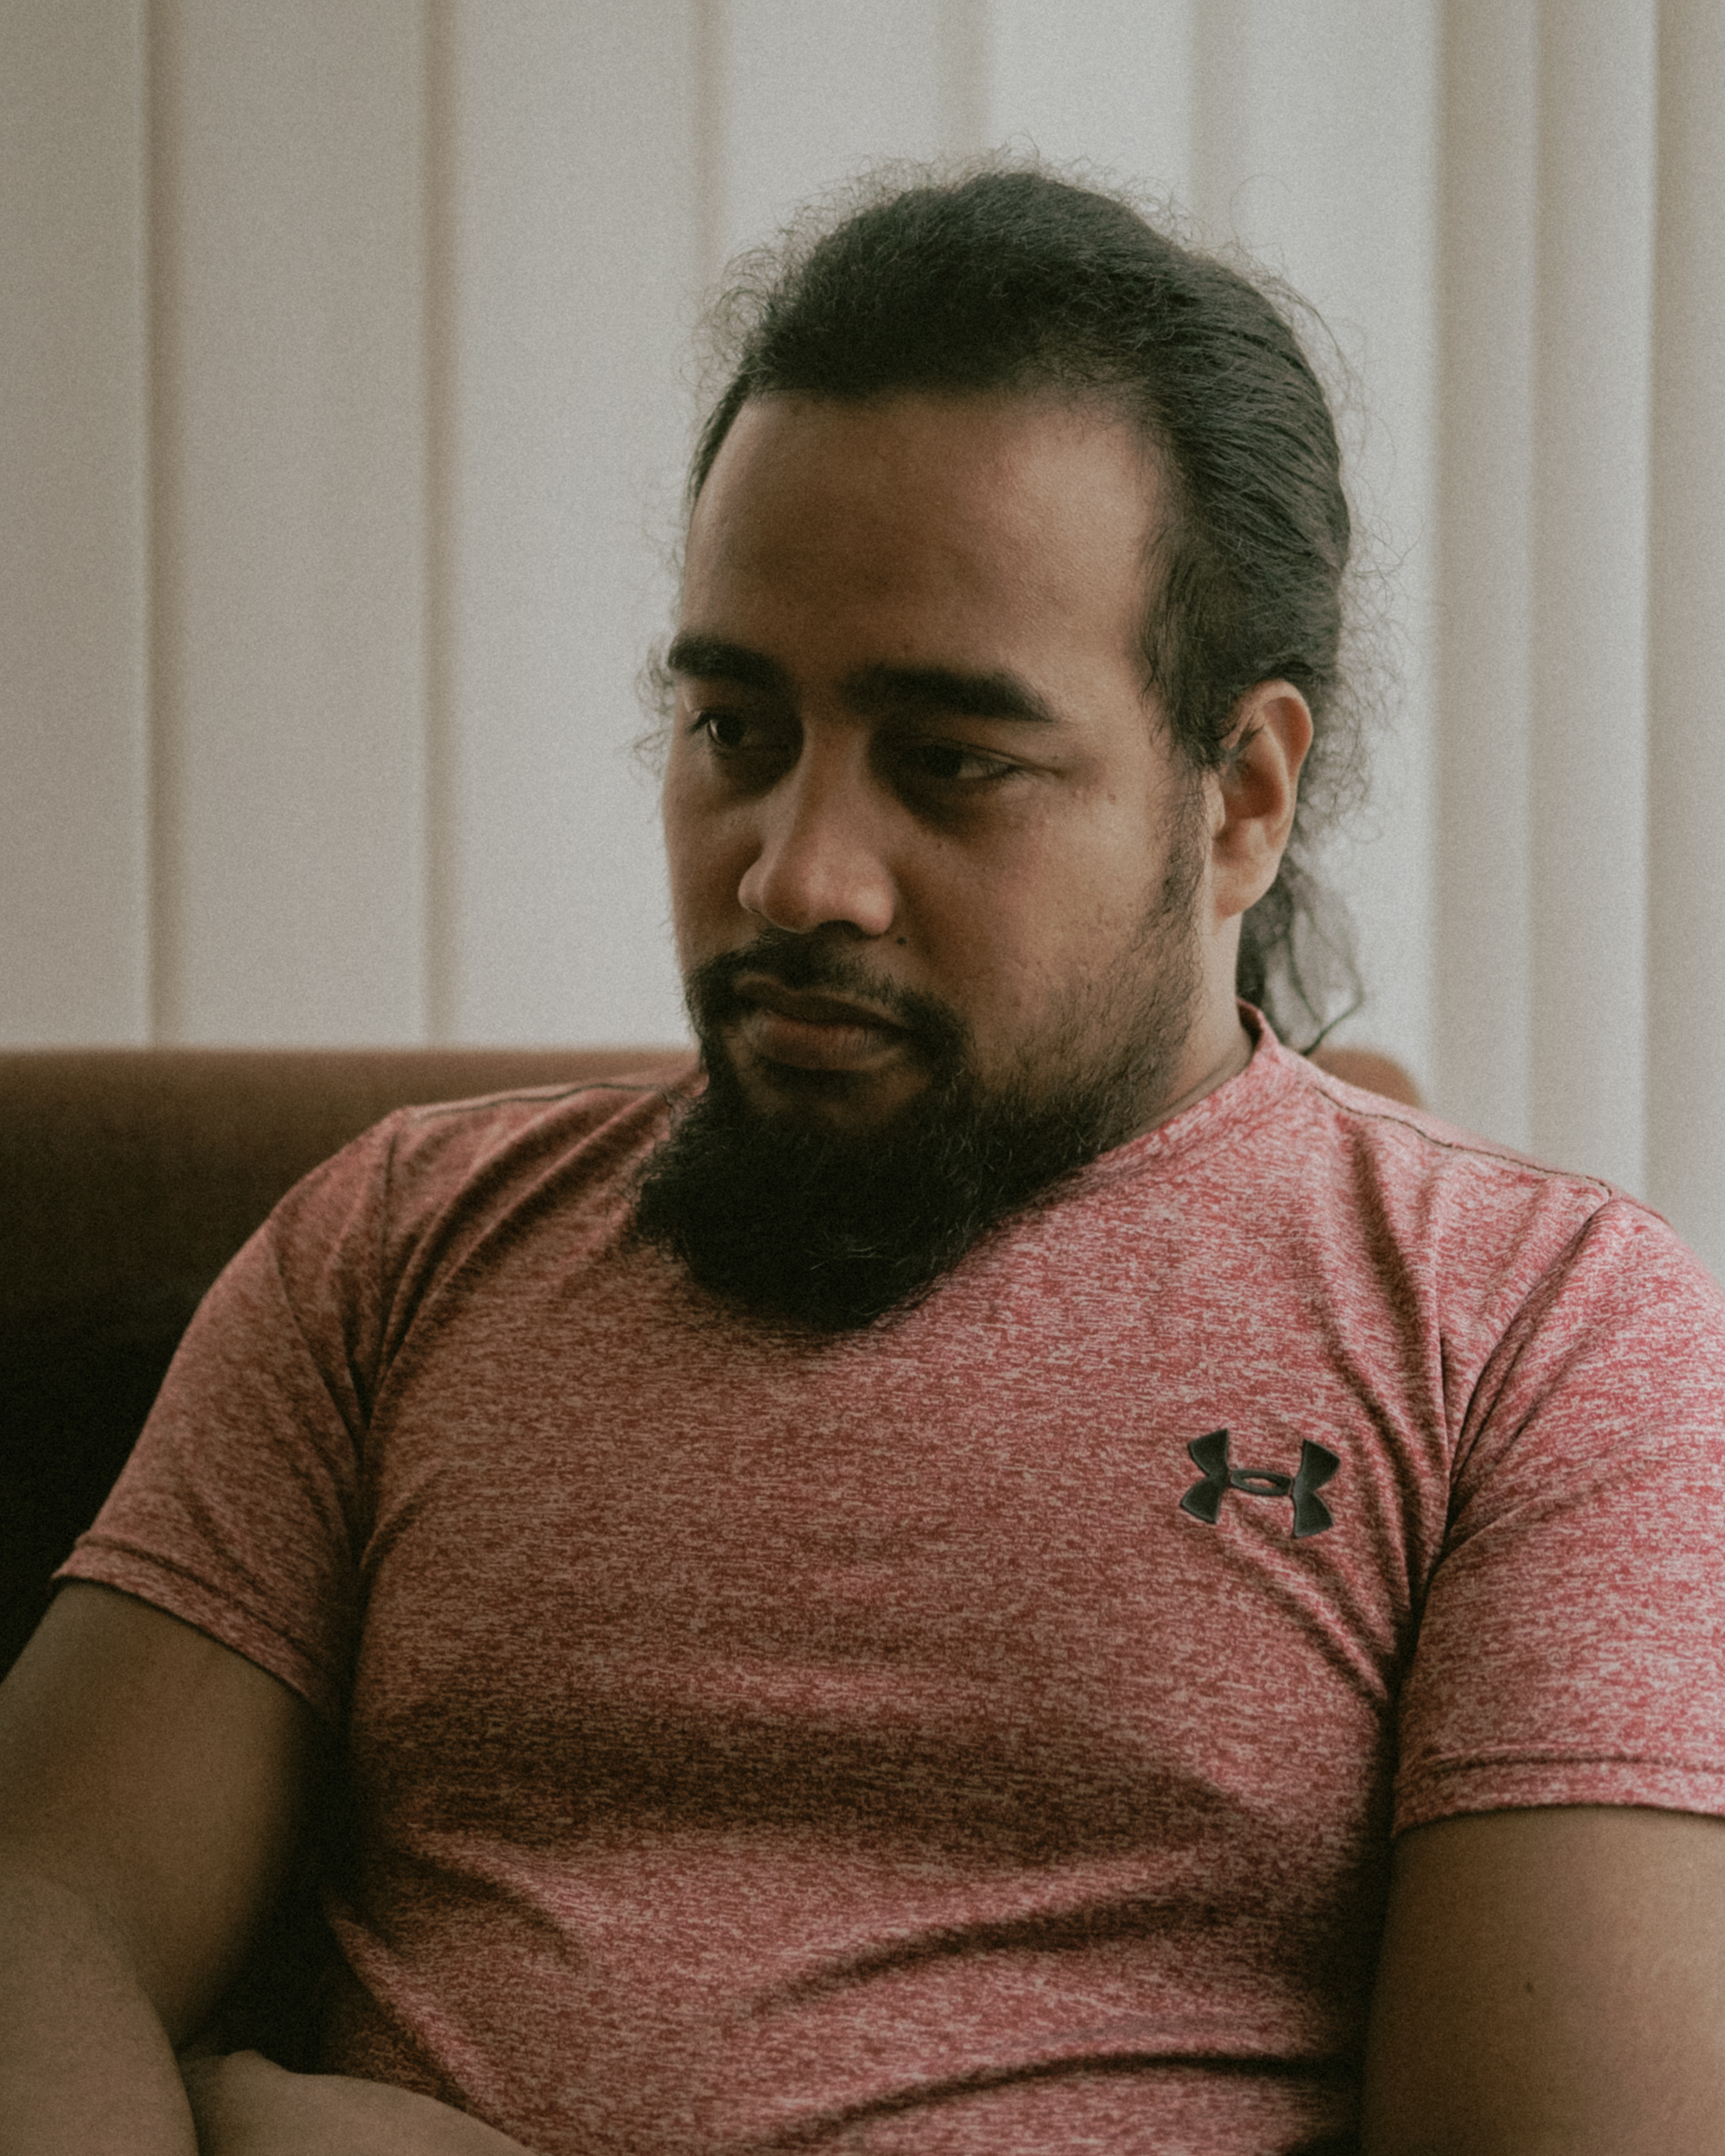 Kaumai Taneuaa, 25, ist Seemann und aufgrund von den Folgen für den Personentransfer durch Covid19 seit 20 Monaten nicht in der Lage nach Hause nach Kiribati zu reisen. Während dieser Zeit wurde sein Sohn geboren, den er noch nie küssen oder anfassen k